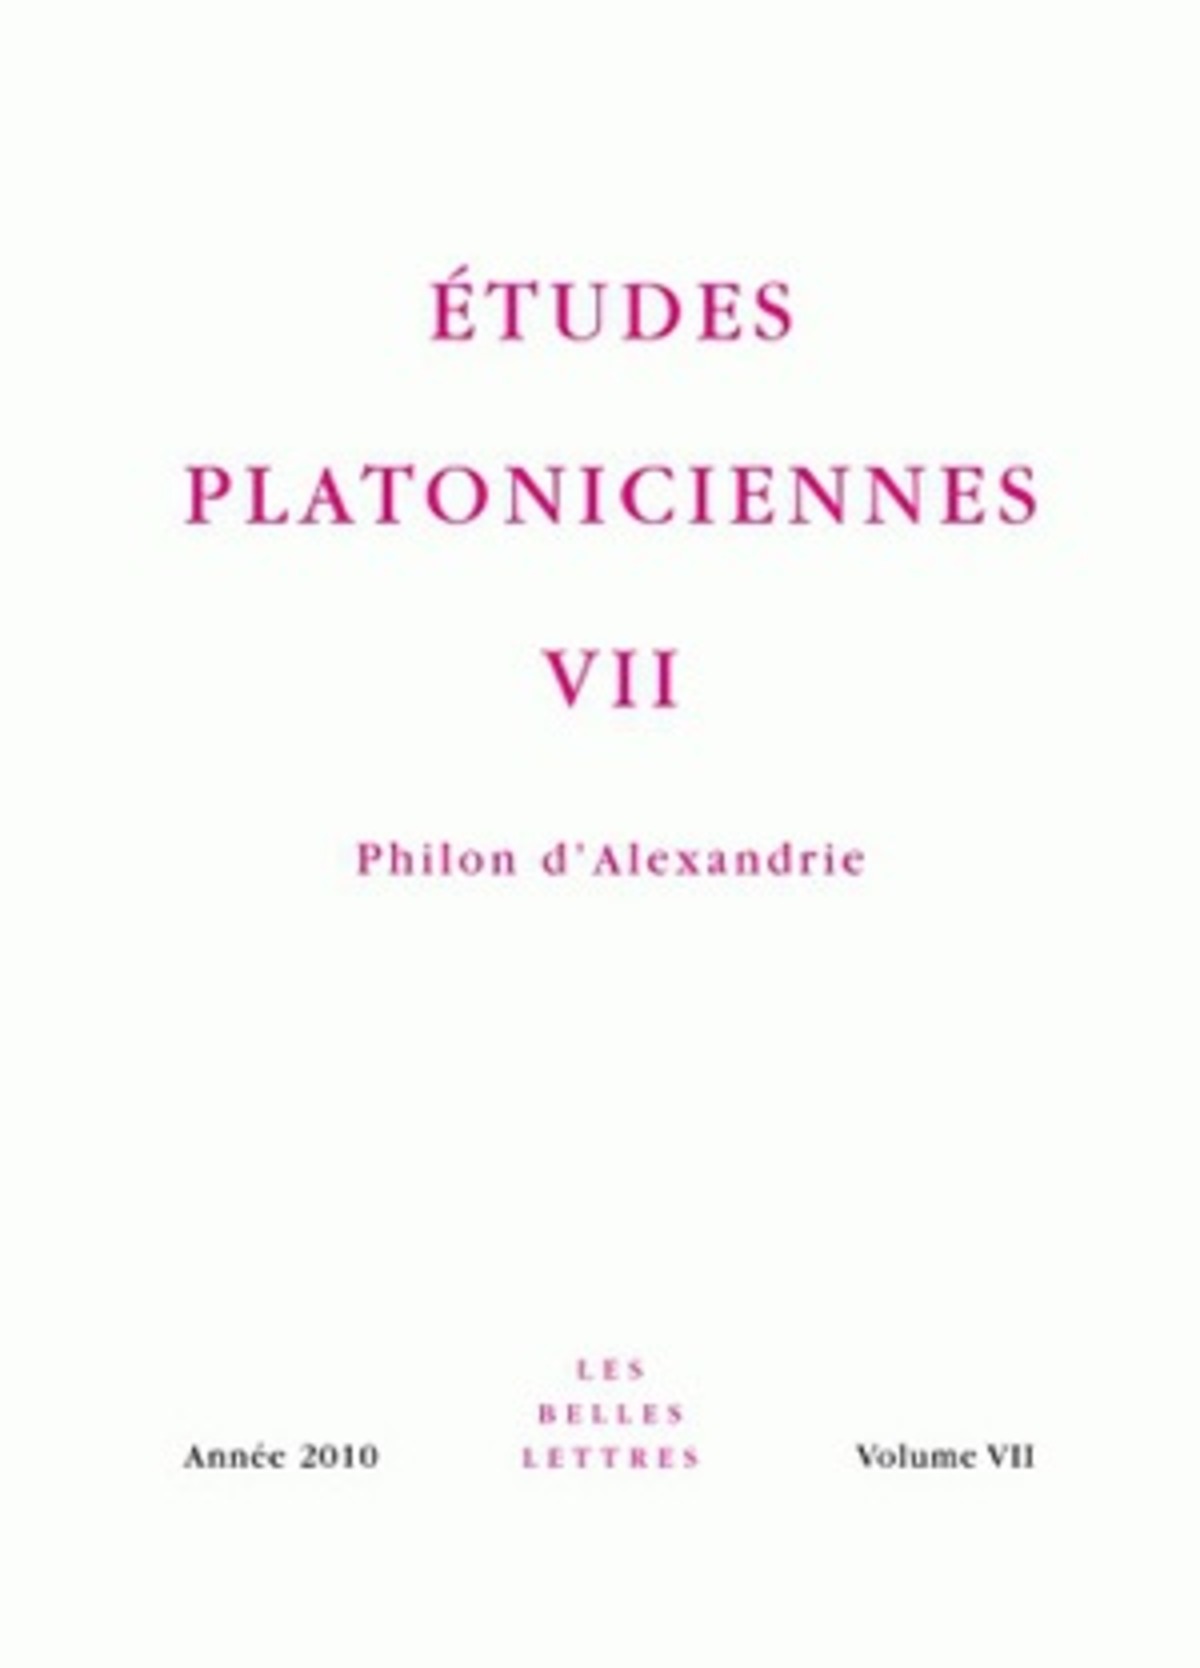 Études platoniciennes VII